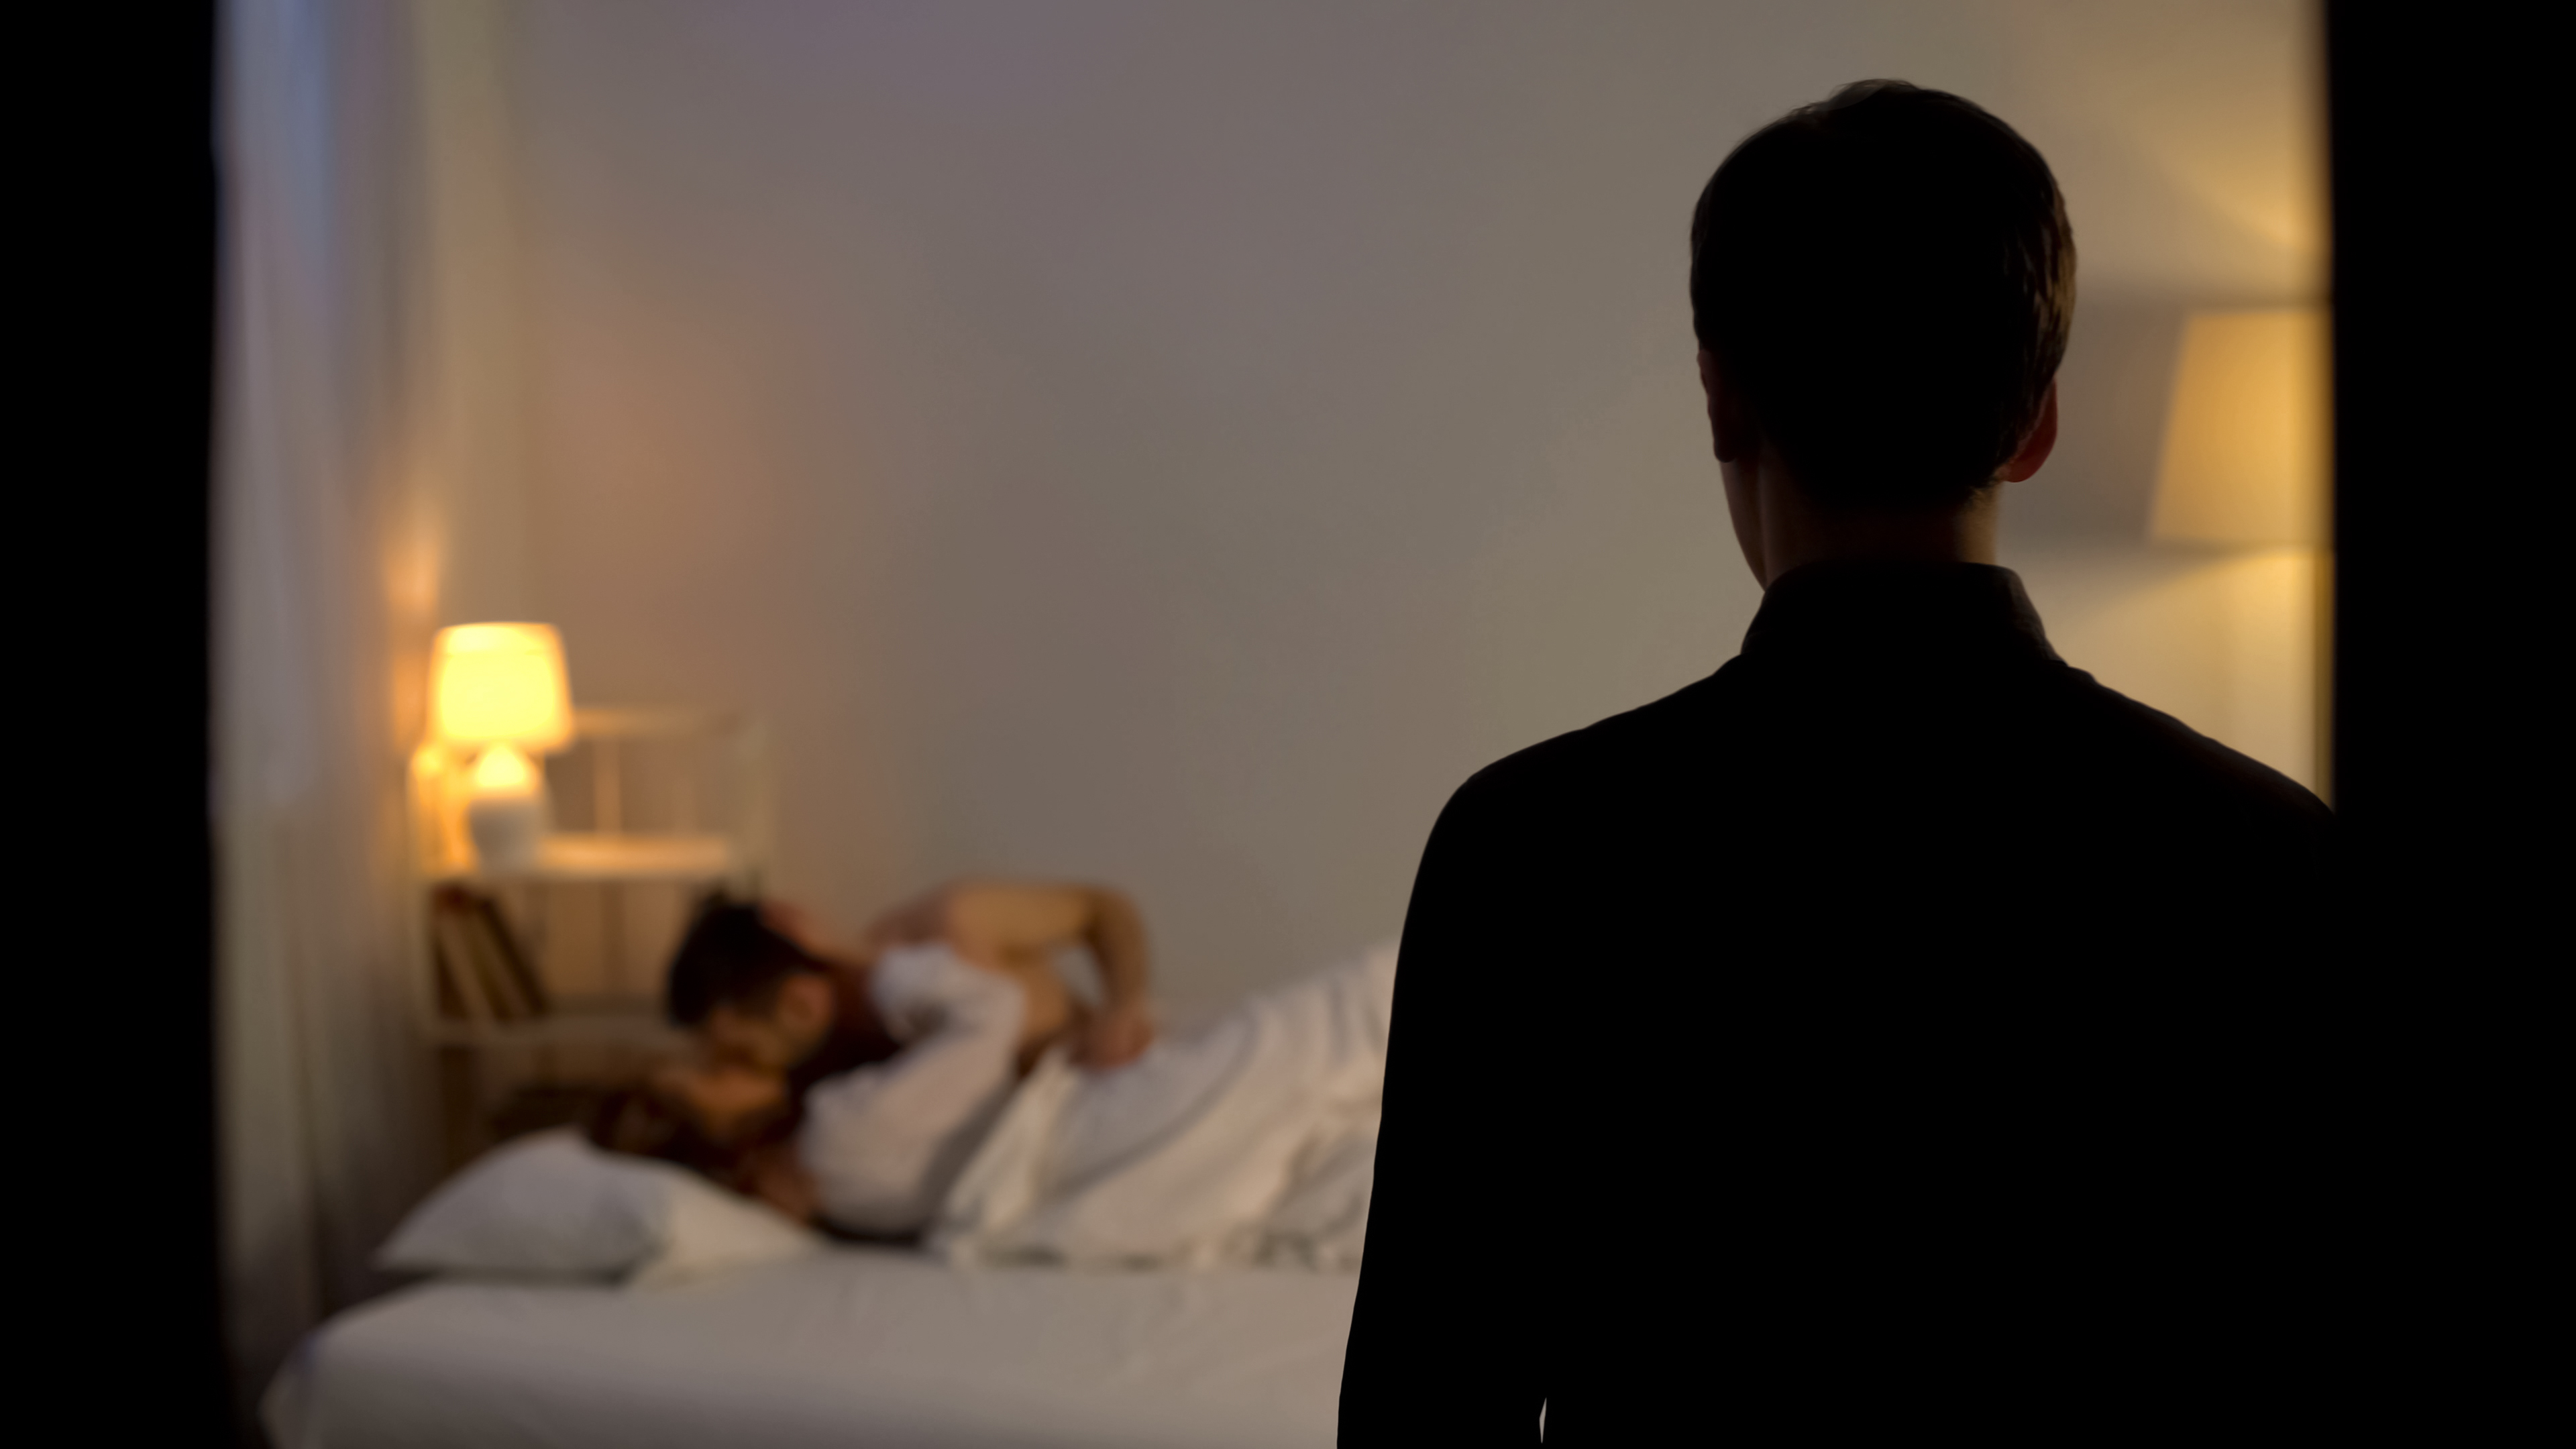 Un marido se queda en estado de shock tras pillar a su mujer engañándole con un amante en la cama. | Foto: Shutterstock